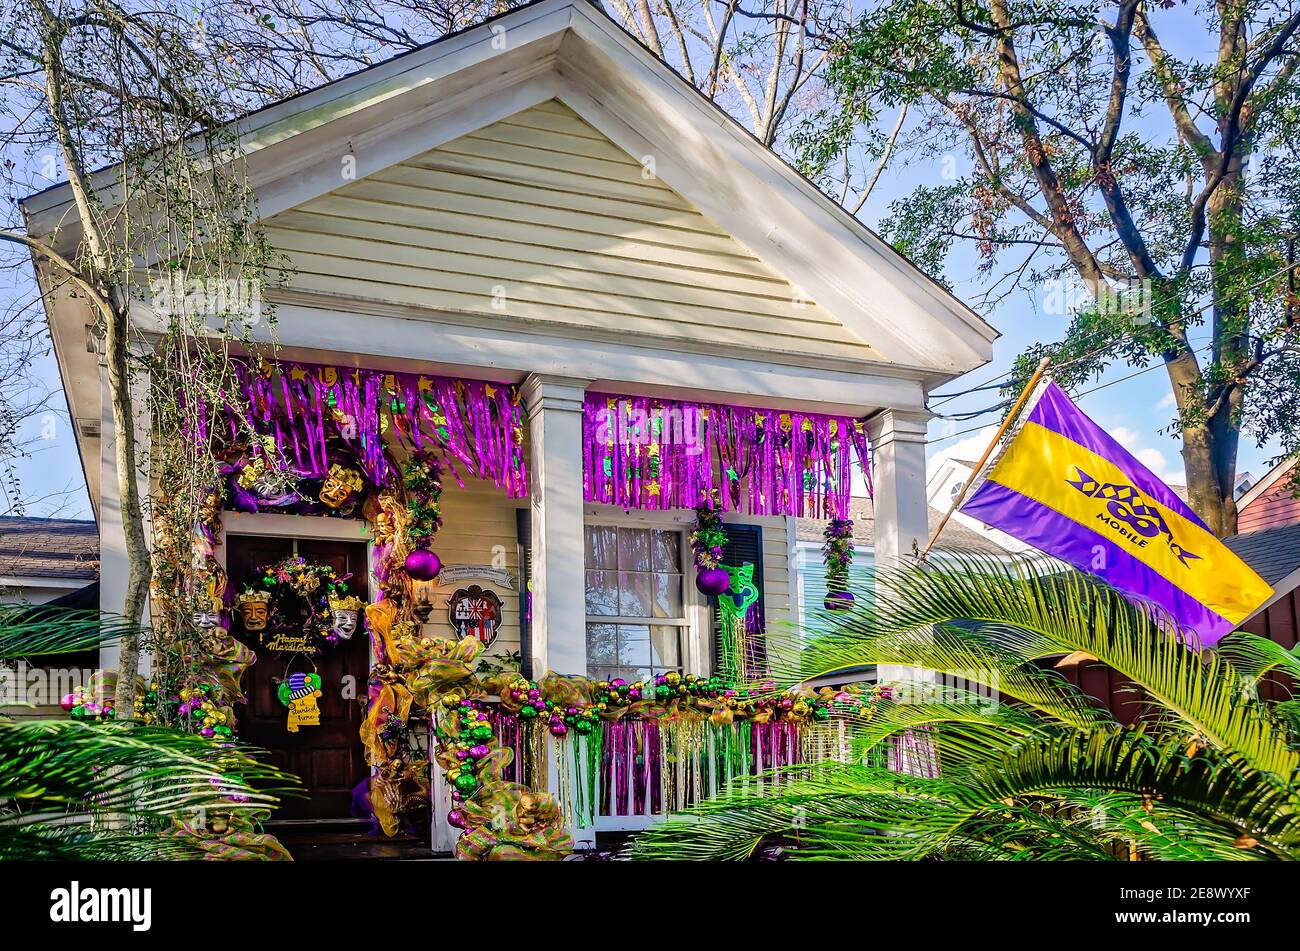 Ein Haus ist für Mardi Gras, 31. Januar 2021, in Mobile, Alabama dekoriert. Paraden werden wegen COVID-19 abgesagt, was die neue Yardi Gras Tradition auslöste. Stockfoto